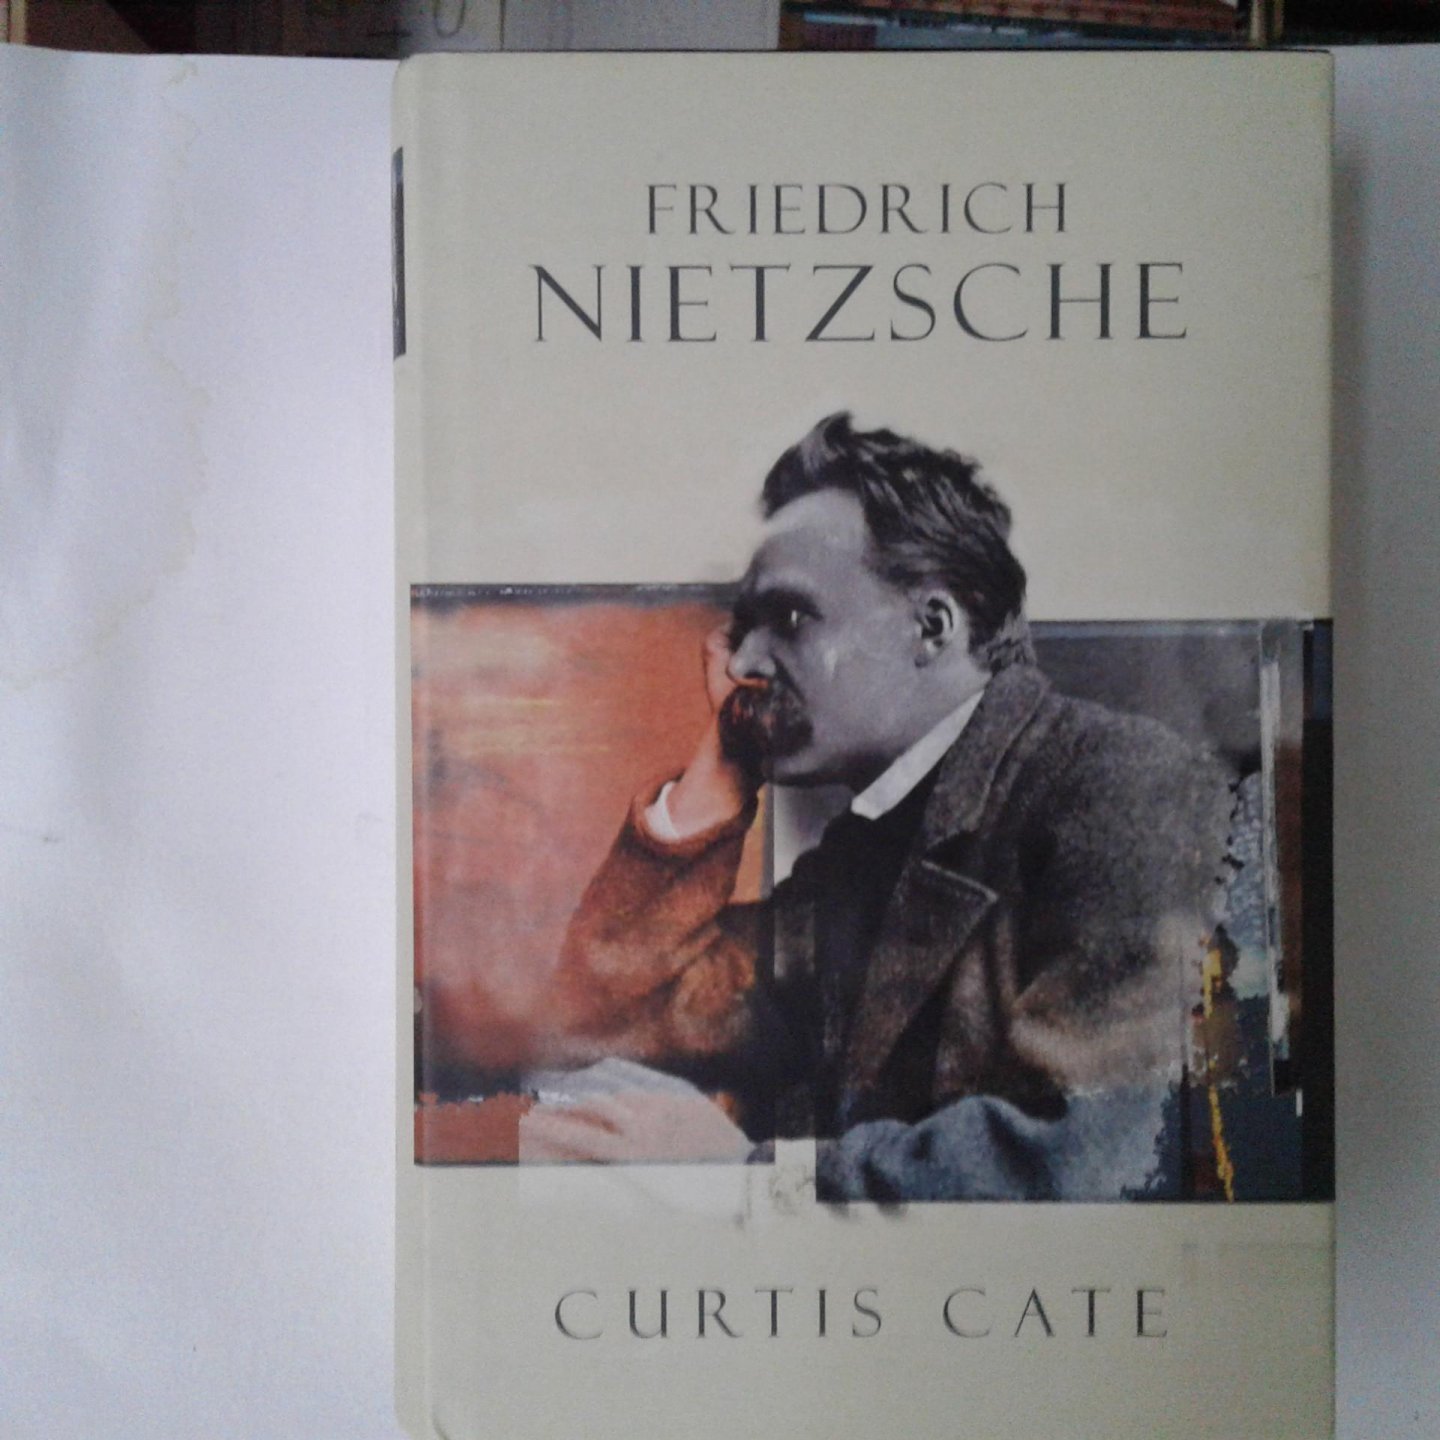 Cate, Curtis - Friedrich Nietzsche